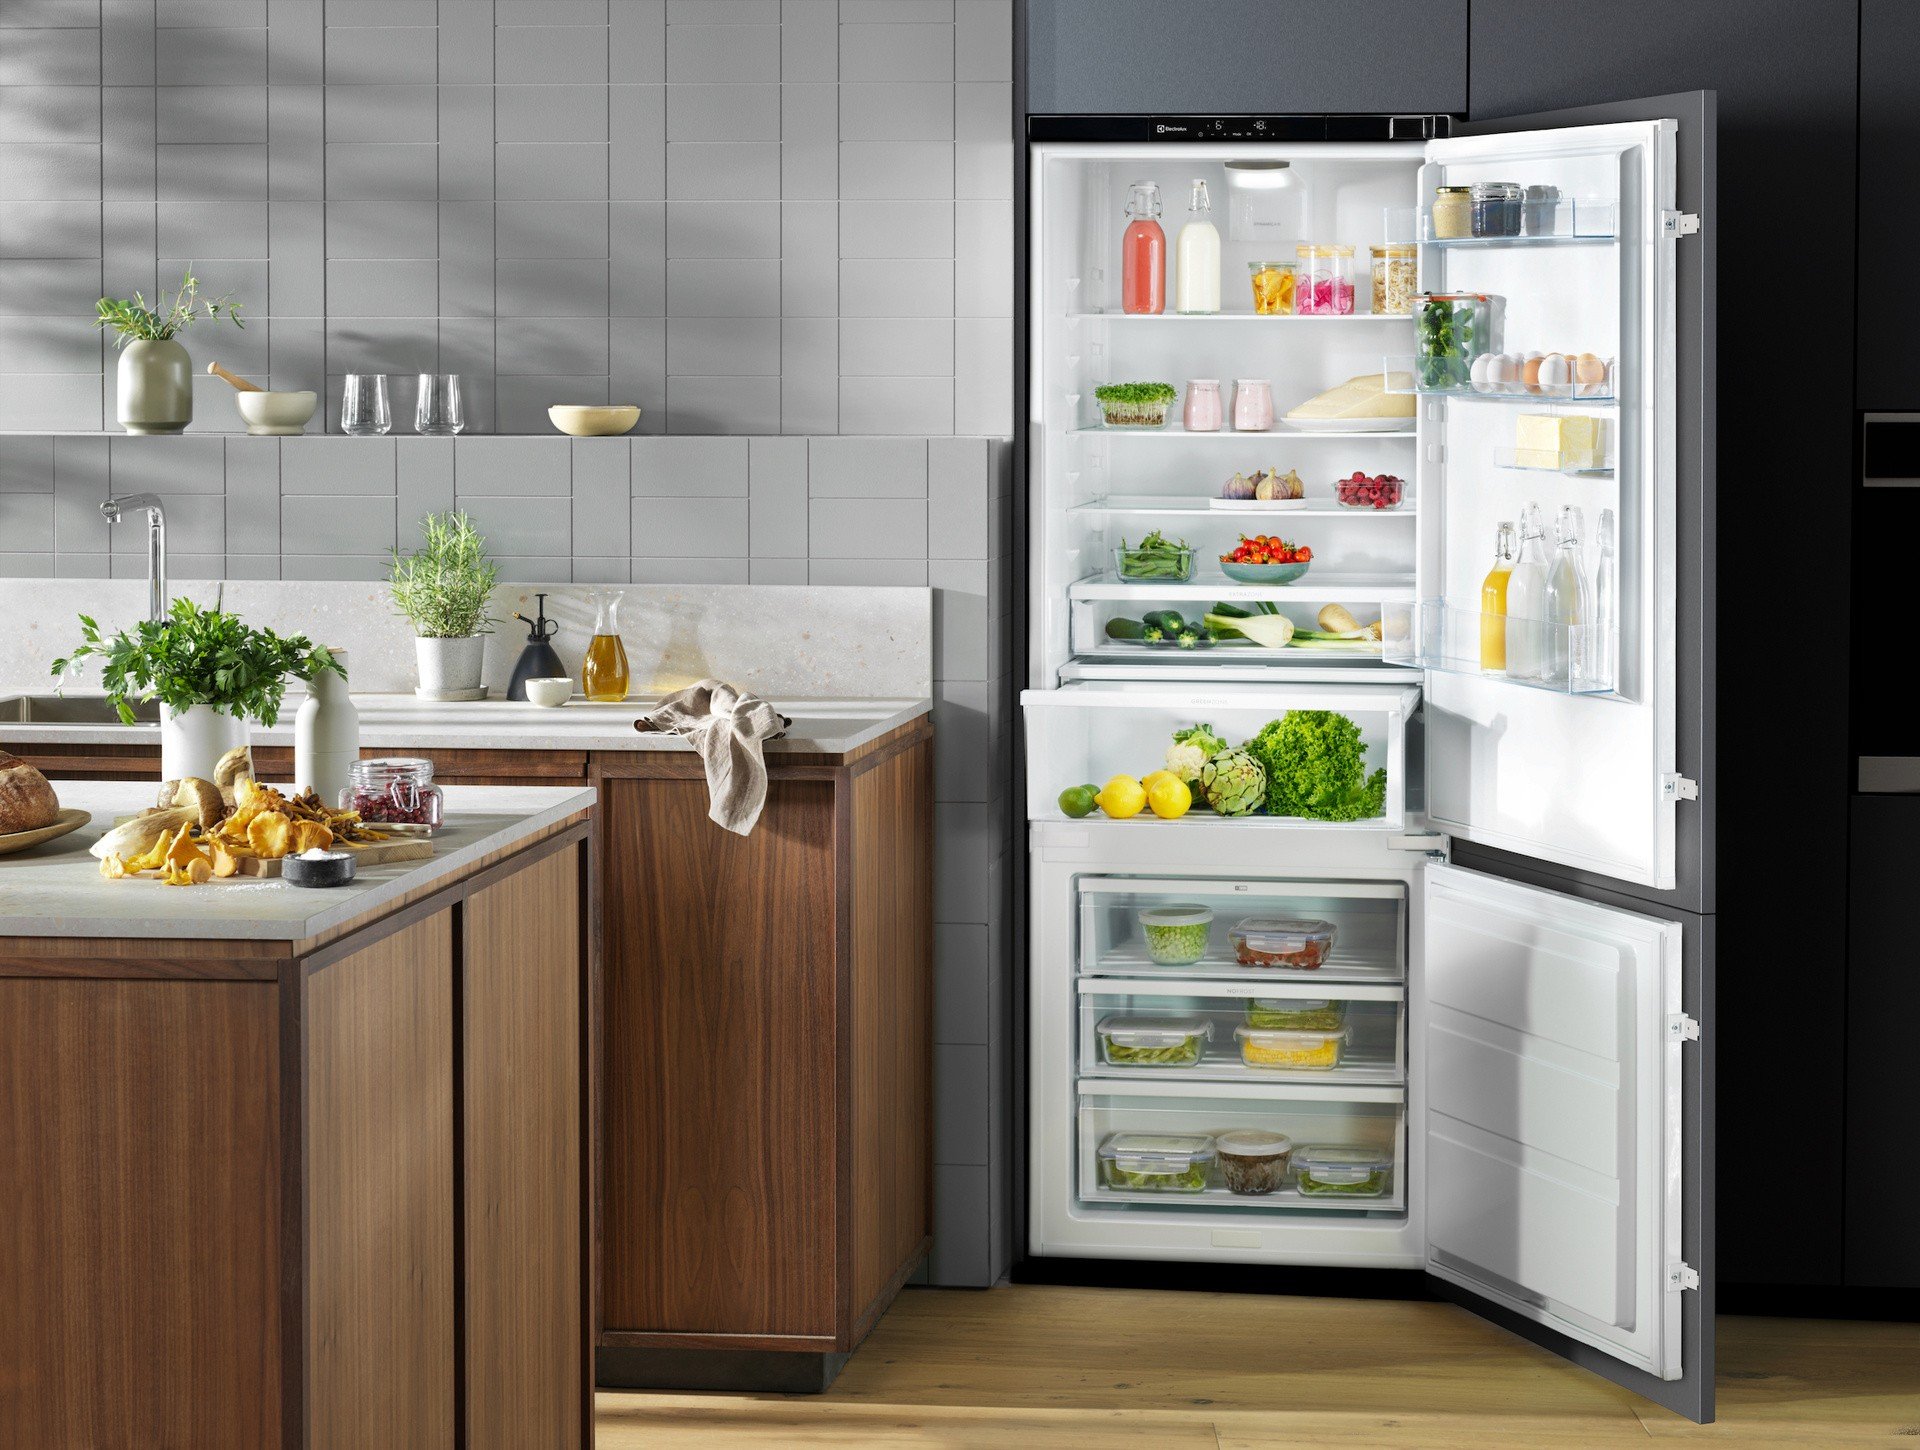 Lepsze przechowywanie, mniej wyrzucania: jak wykorzystać dobrze półki w  lodówce | Strona Kuchni